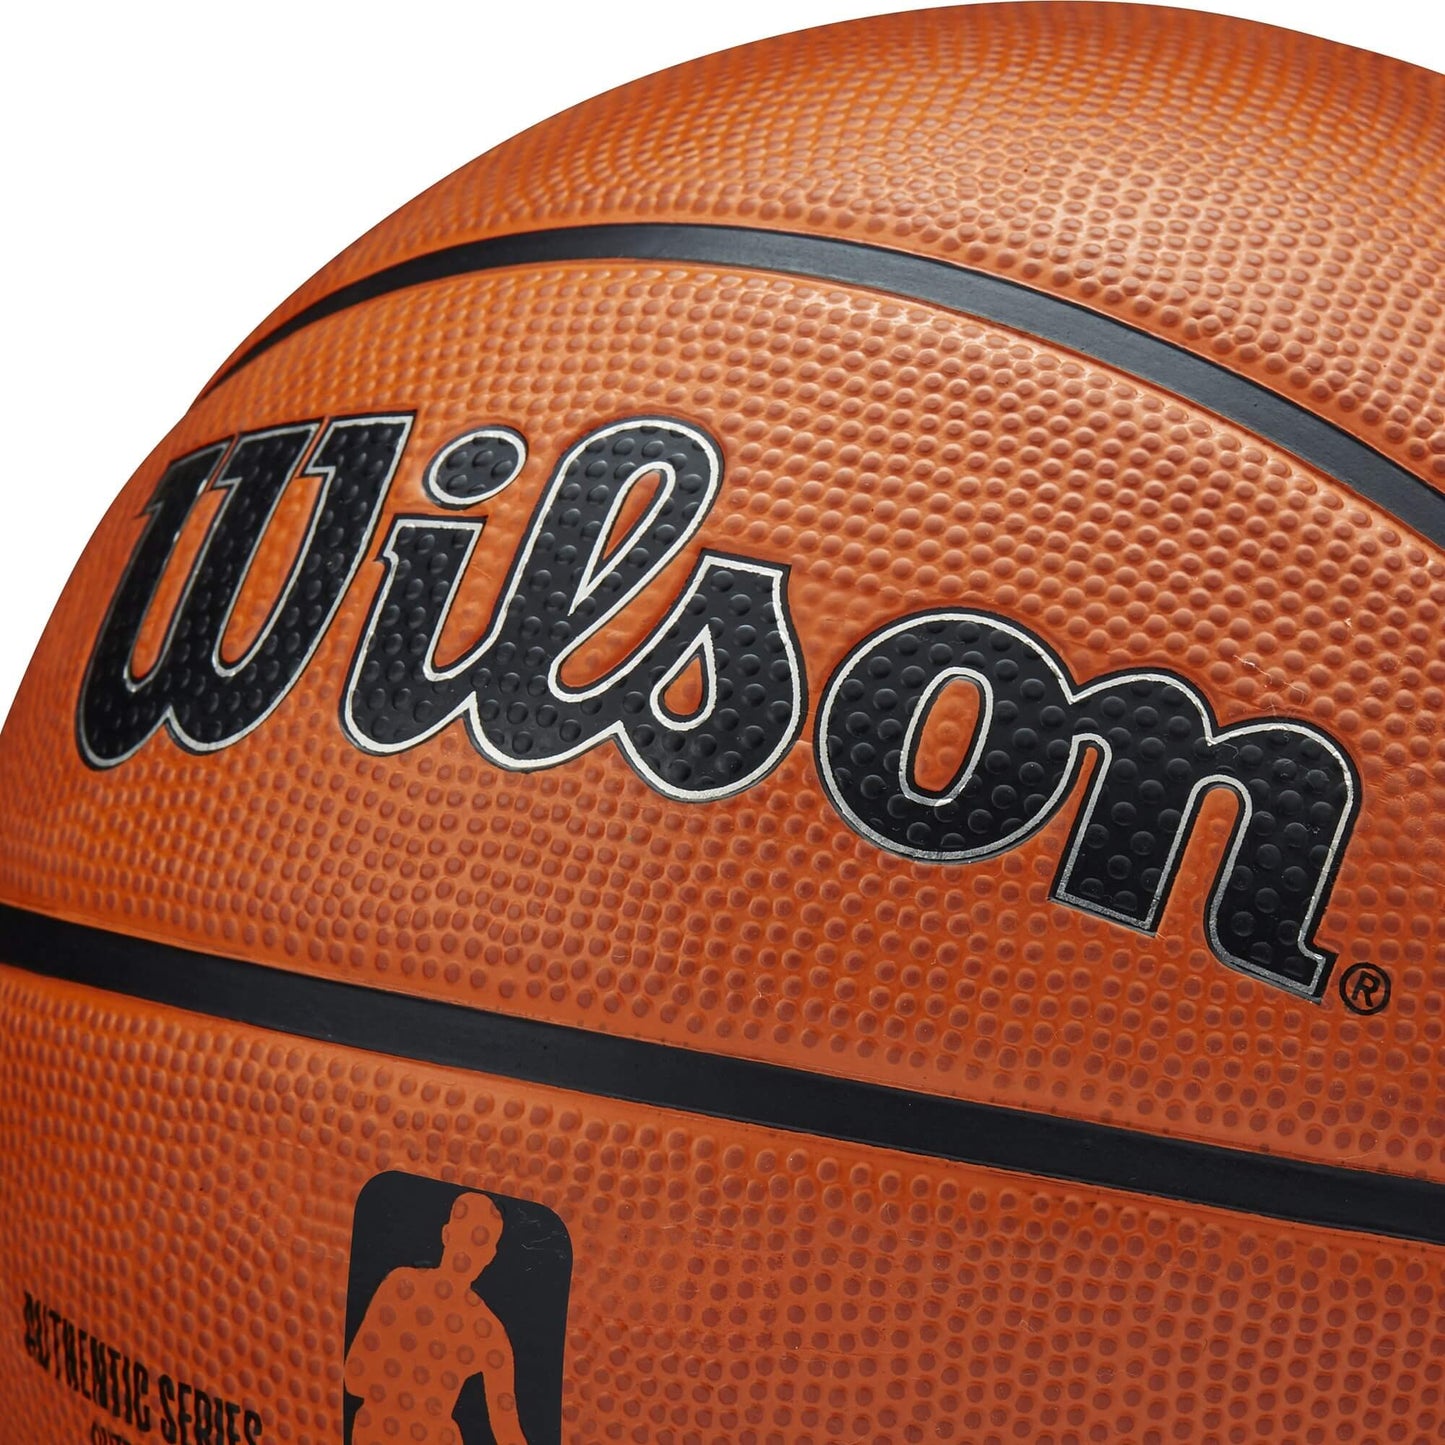 Wilson NBA Authentic Series Outdoor (sz. 7)